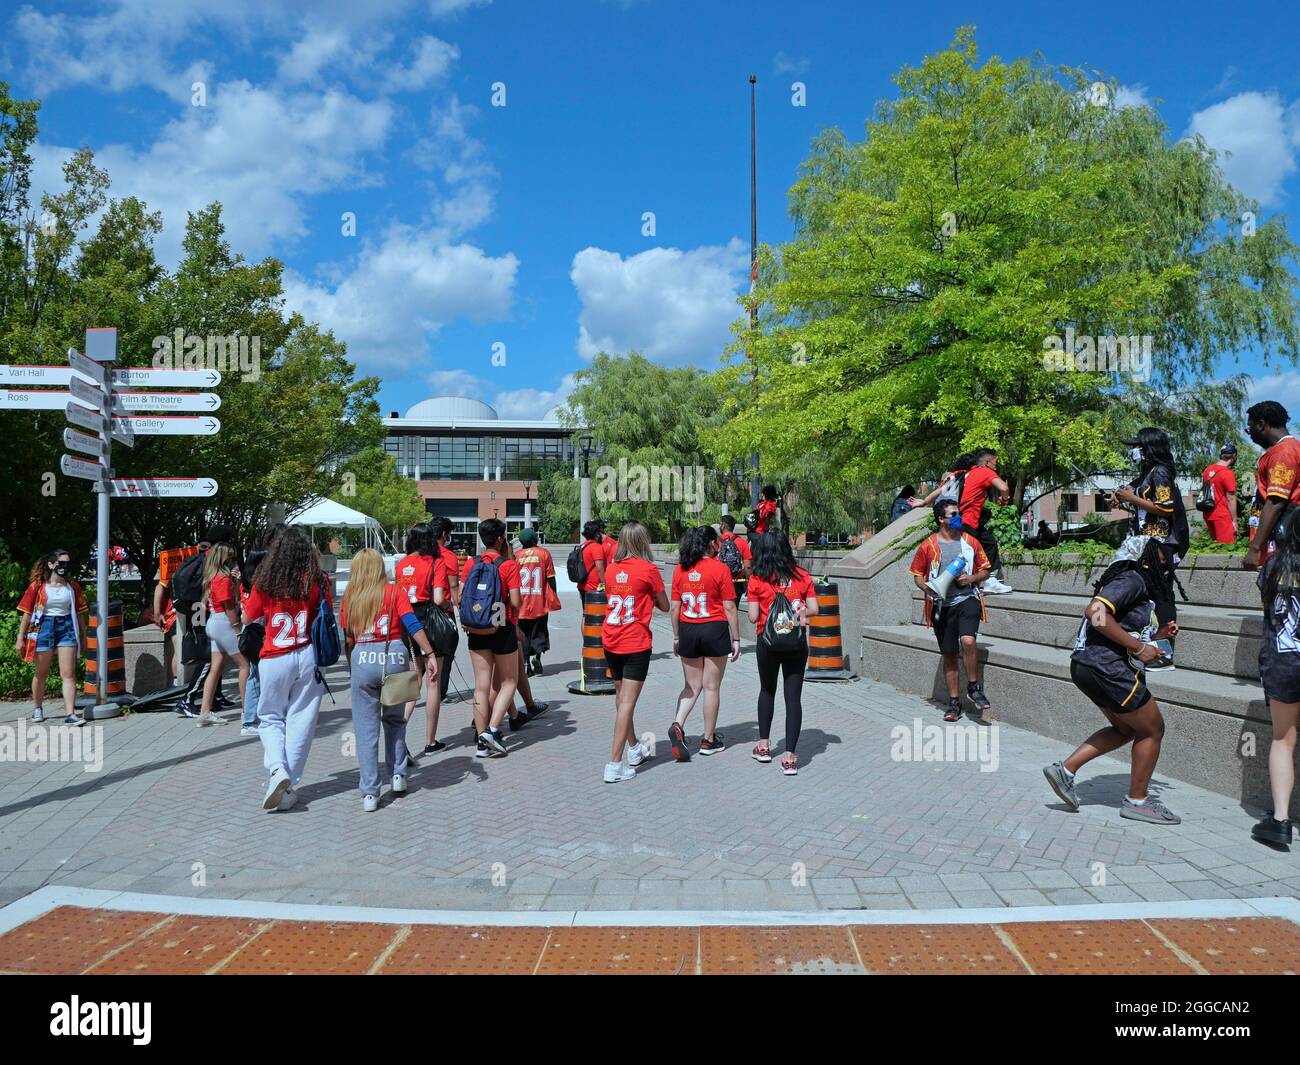 Toronto, Kanada - 30. August 2021: Frosh Week an der York University, um neue Studenten auf dem Campus vorzustellen, mit Gesichtsmasken aufgrund der Pandemie. Stockfoto